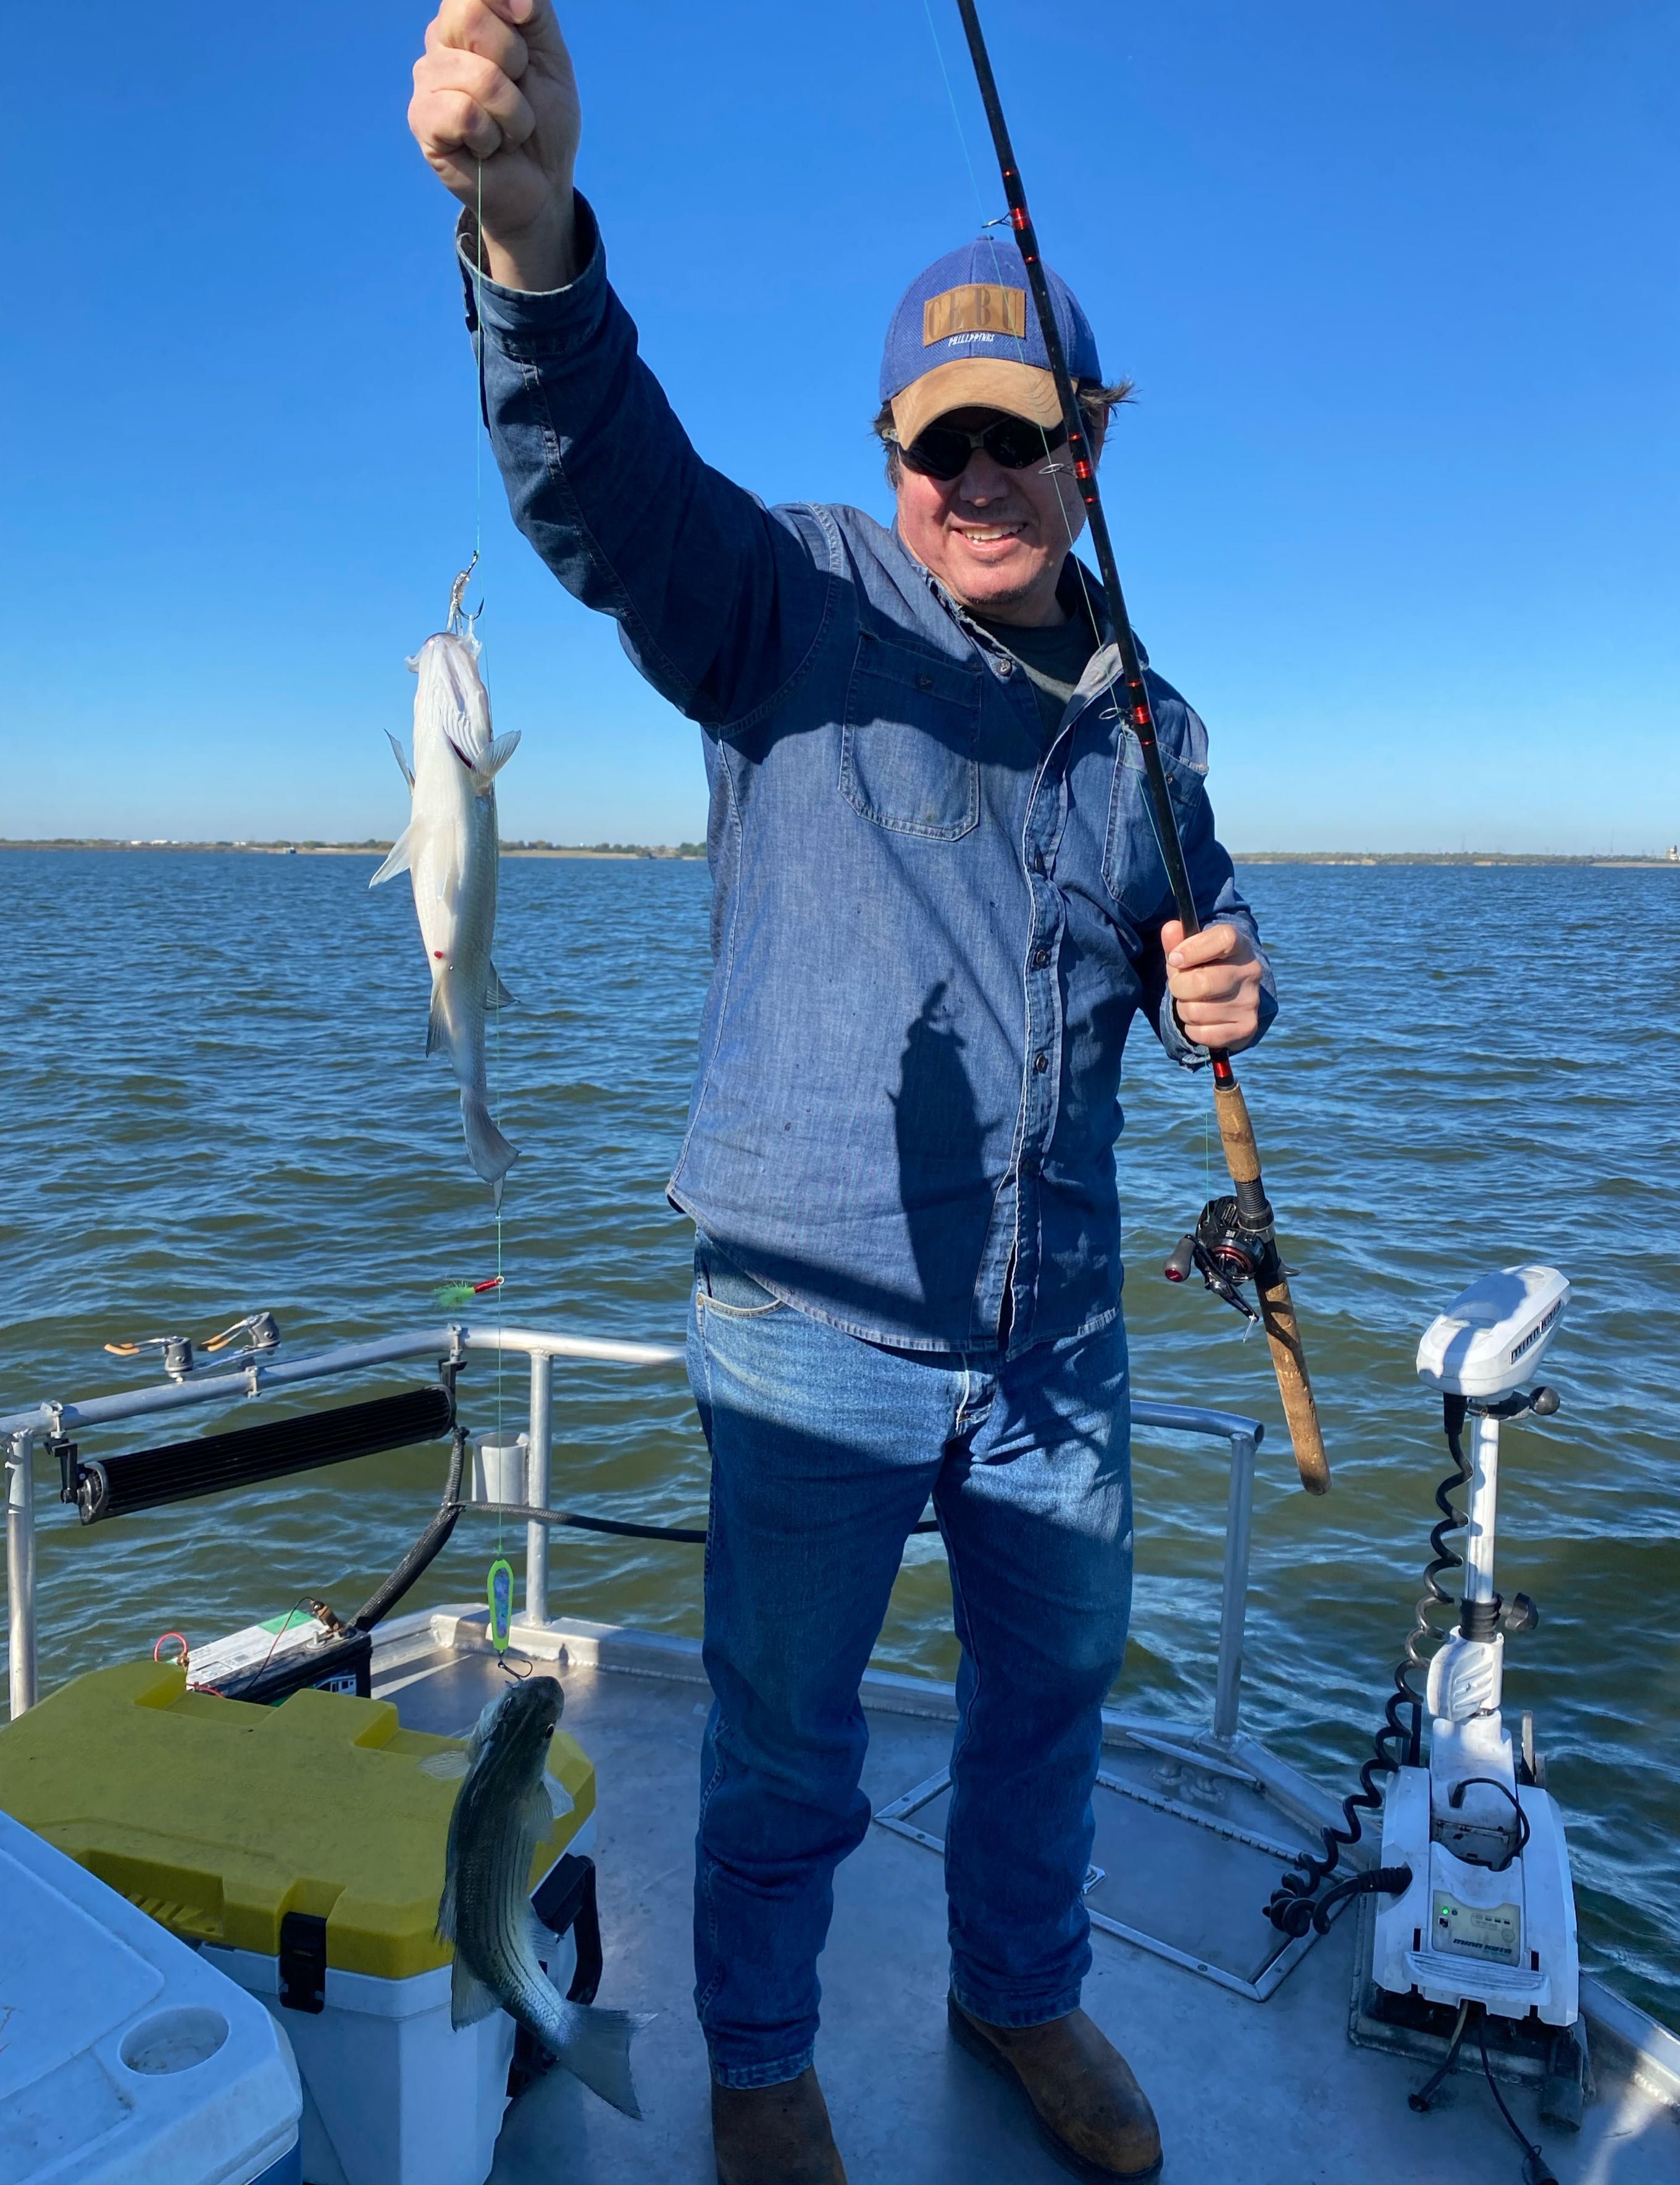 Fun Morning Fishing In Texas